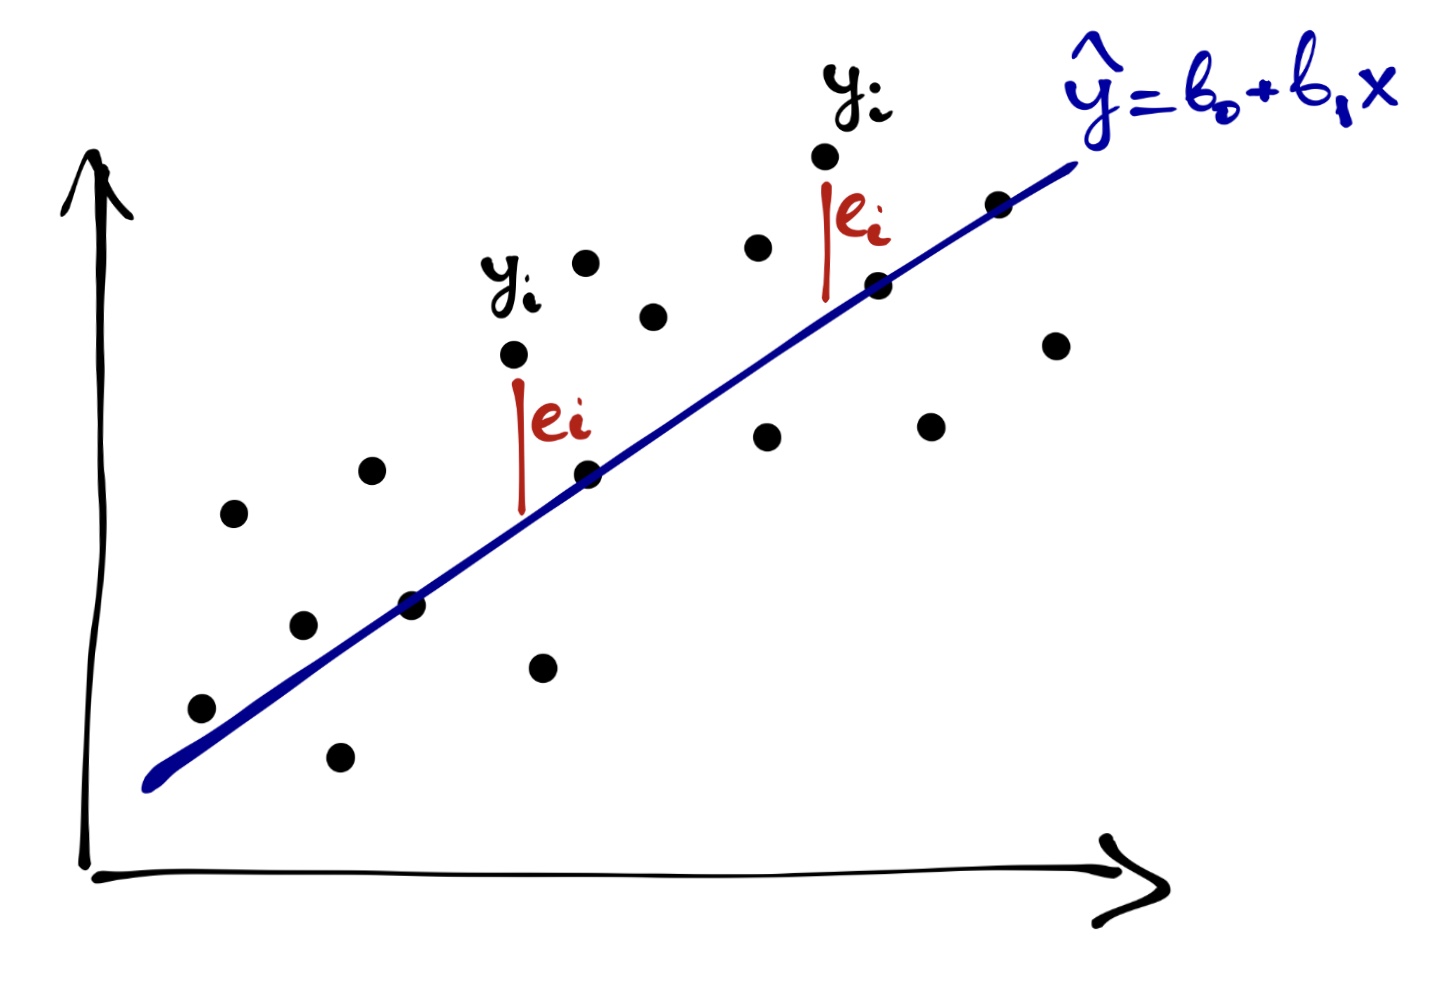 Рисунок регрессии карандашами. Линейное моделирование. Модель линейной регрессии Python. Простая линейность.